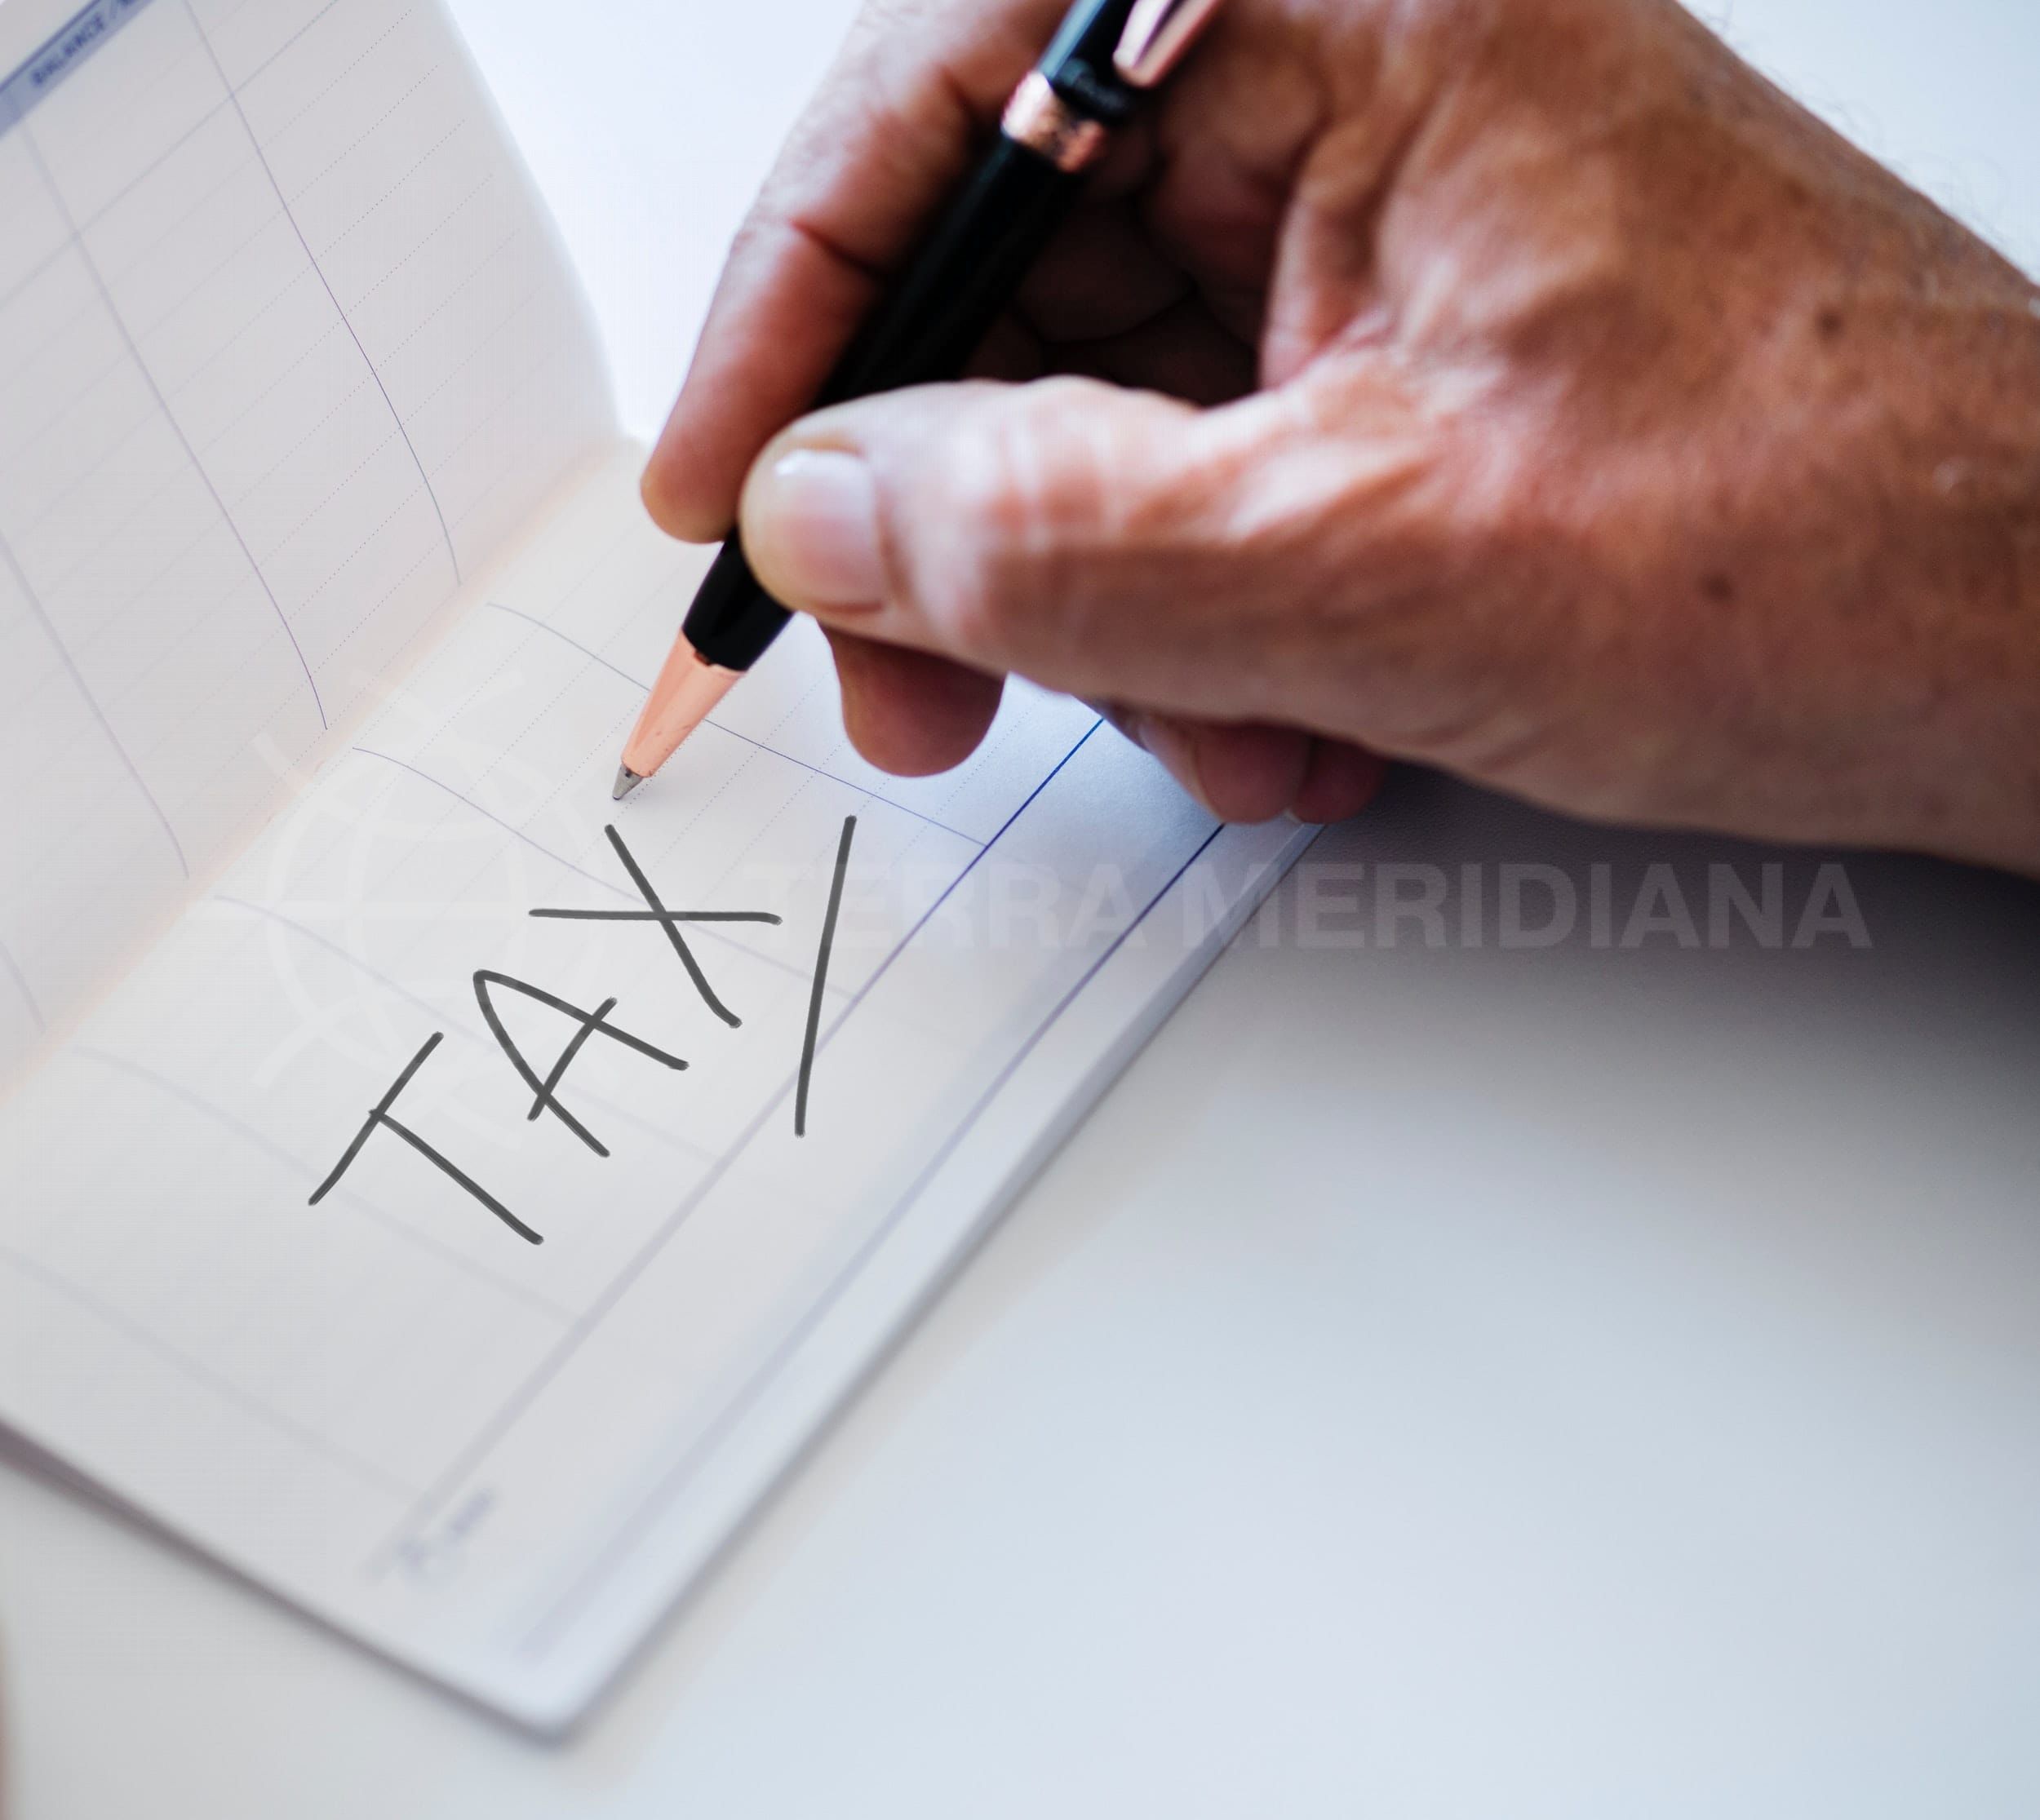 Alerte ! La taxe sur l’héritage réduite à zéro en Andalousie en 2019 !